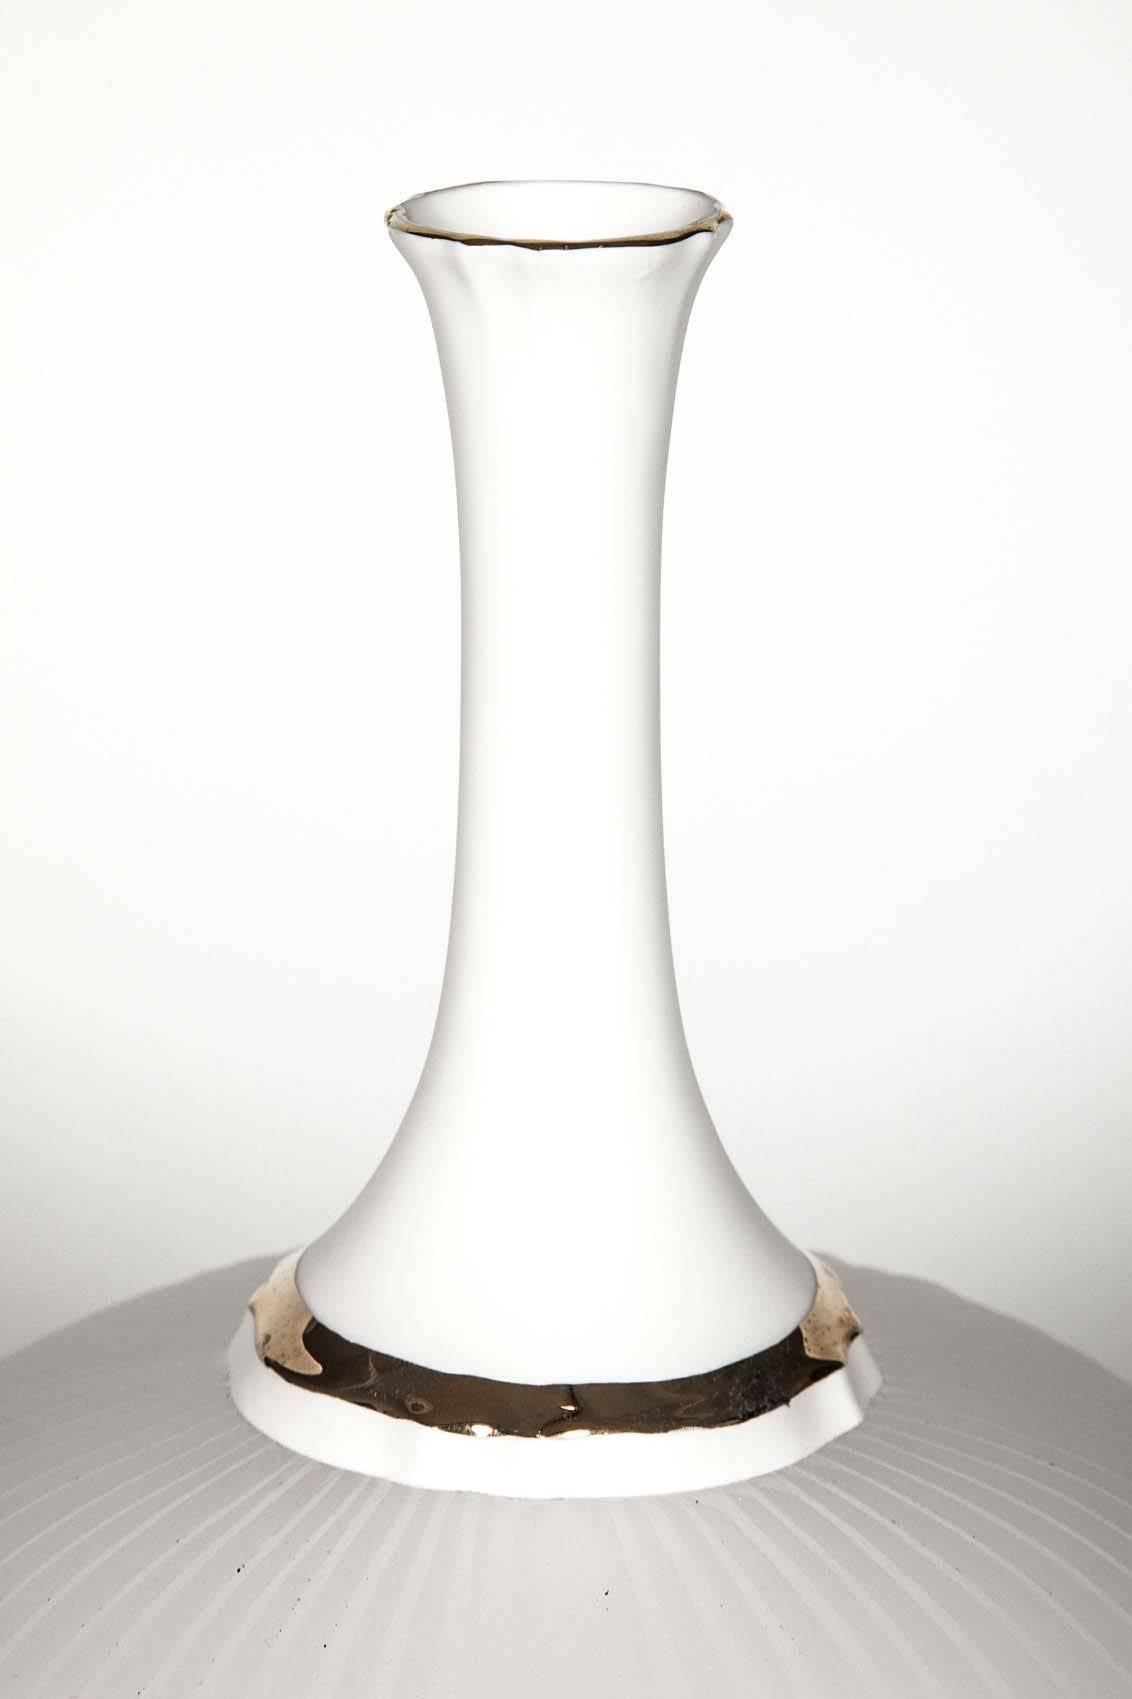 Koreanisches Glas mit Gold 9 ist eine einzigartige Skulptur des südkoreanischen Künstlers Choi Keeryong. Das aus gegossenem und geschliffenem Glas in Kombination mit Porzellan gefertigte Stück ist mit eleganten Details in Goldglanz